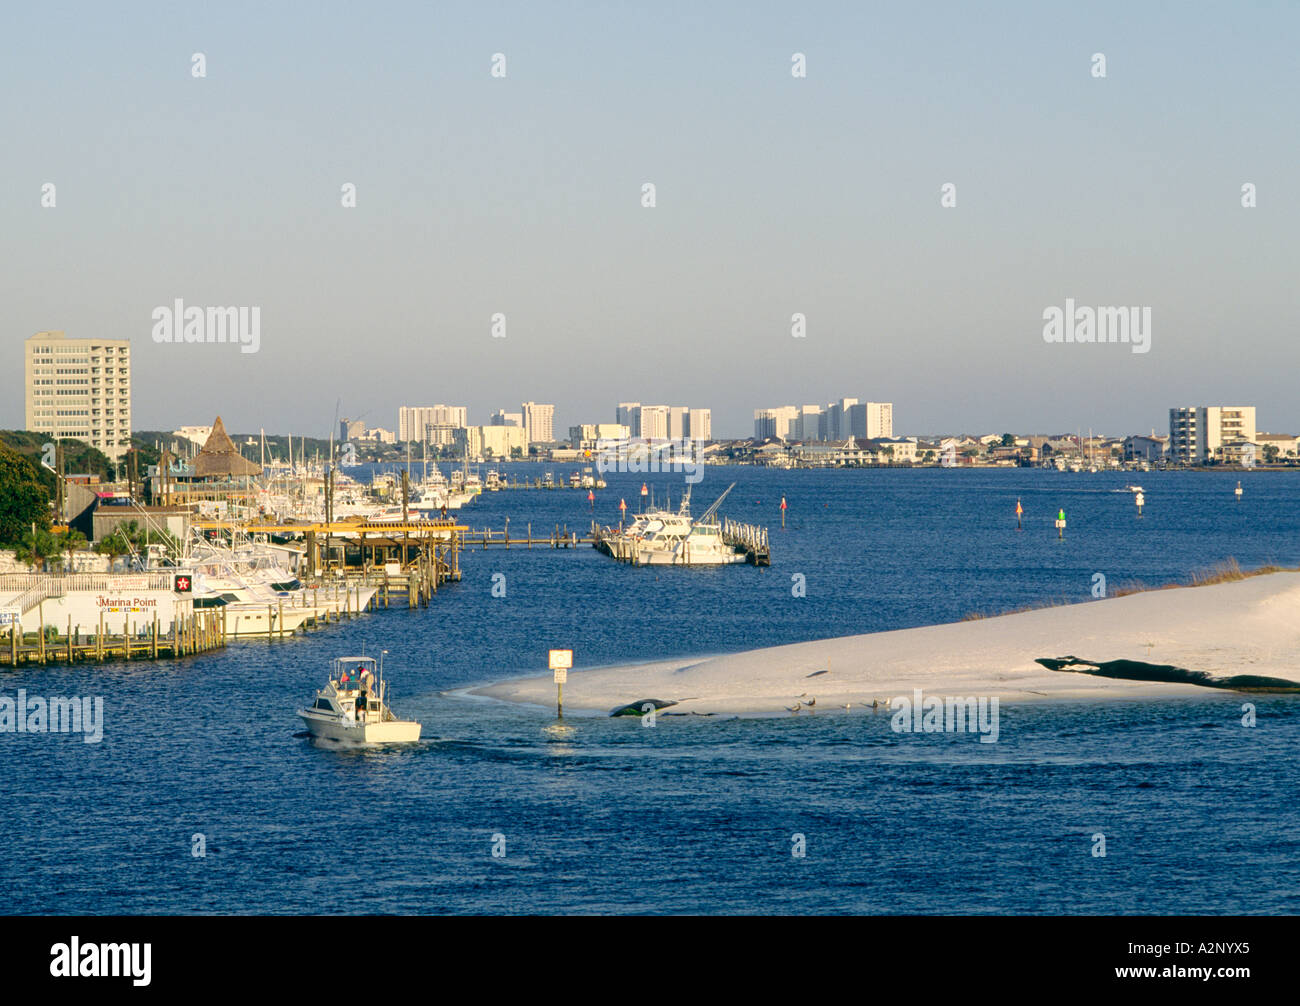 Angelboot/Fischerboot in den Hafen von Destin Ferienort am beliebten Fischen auf der Golf-Küste von Florida, USA Stockfoto